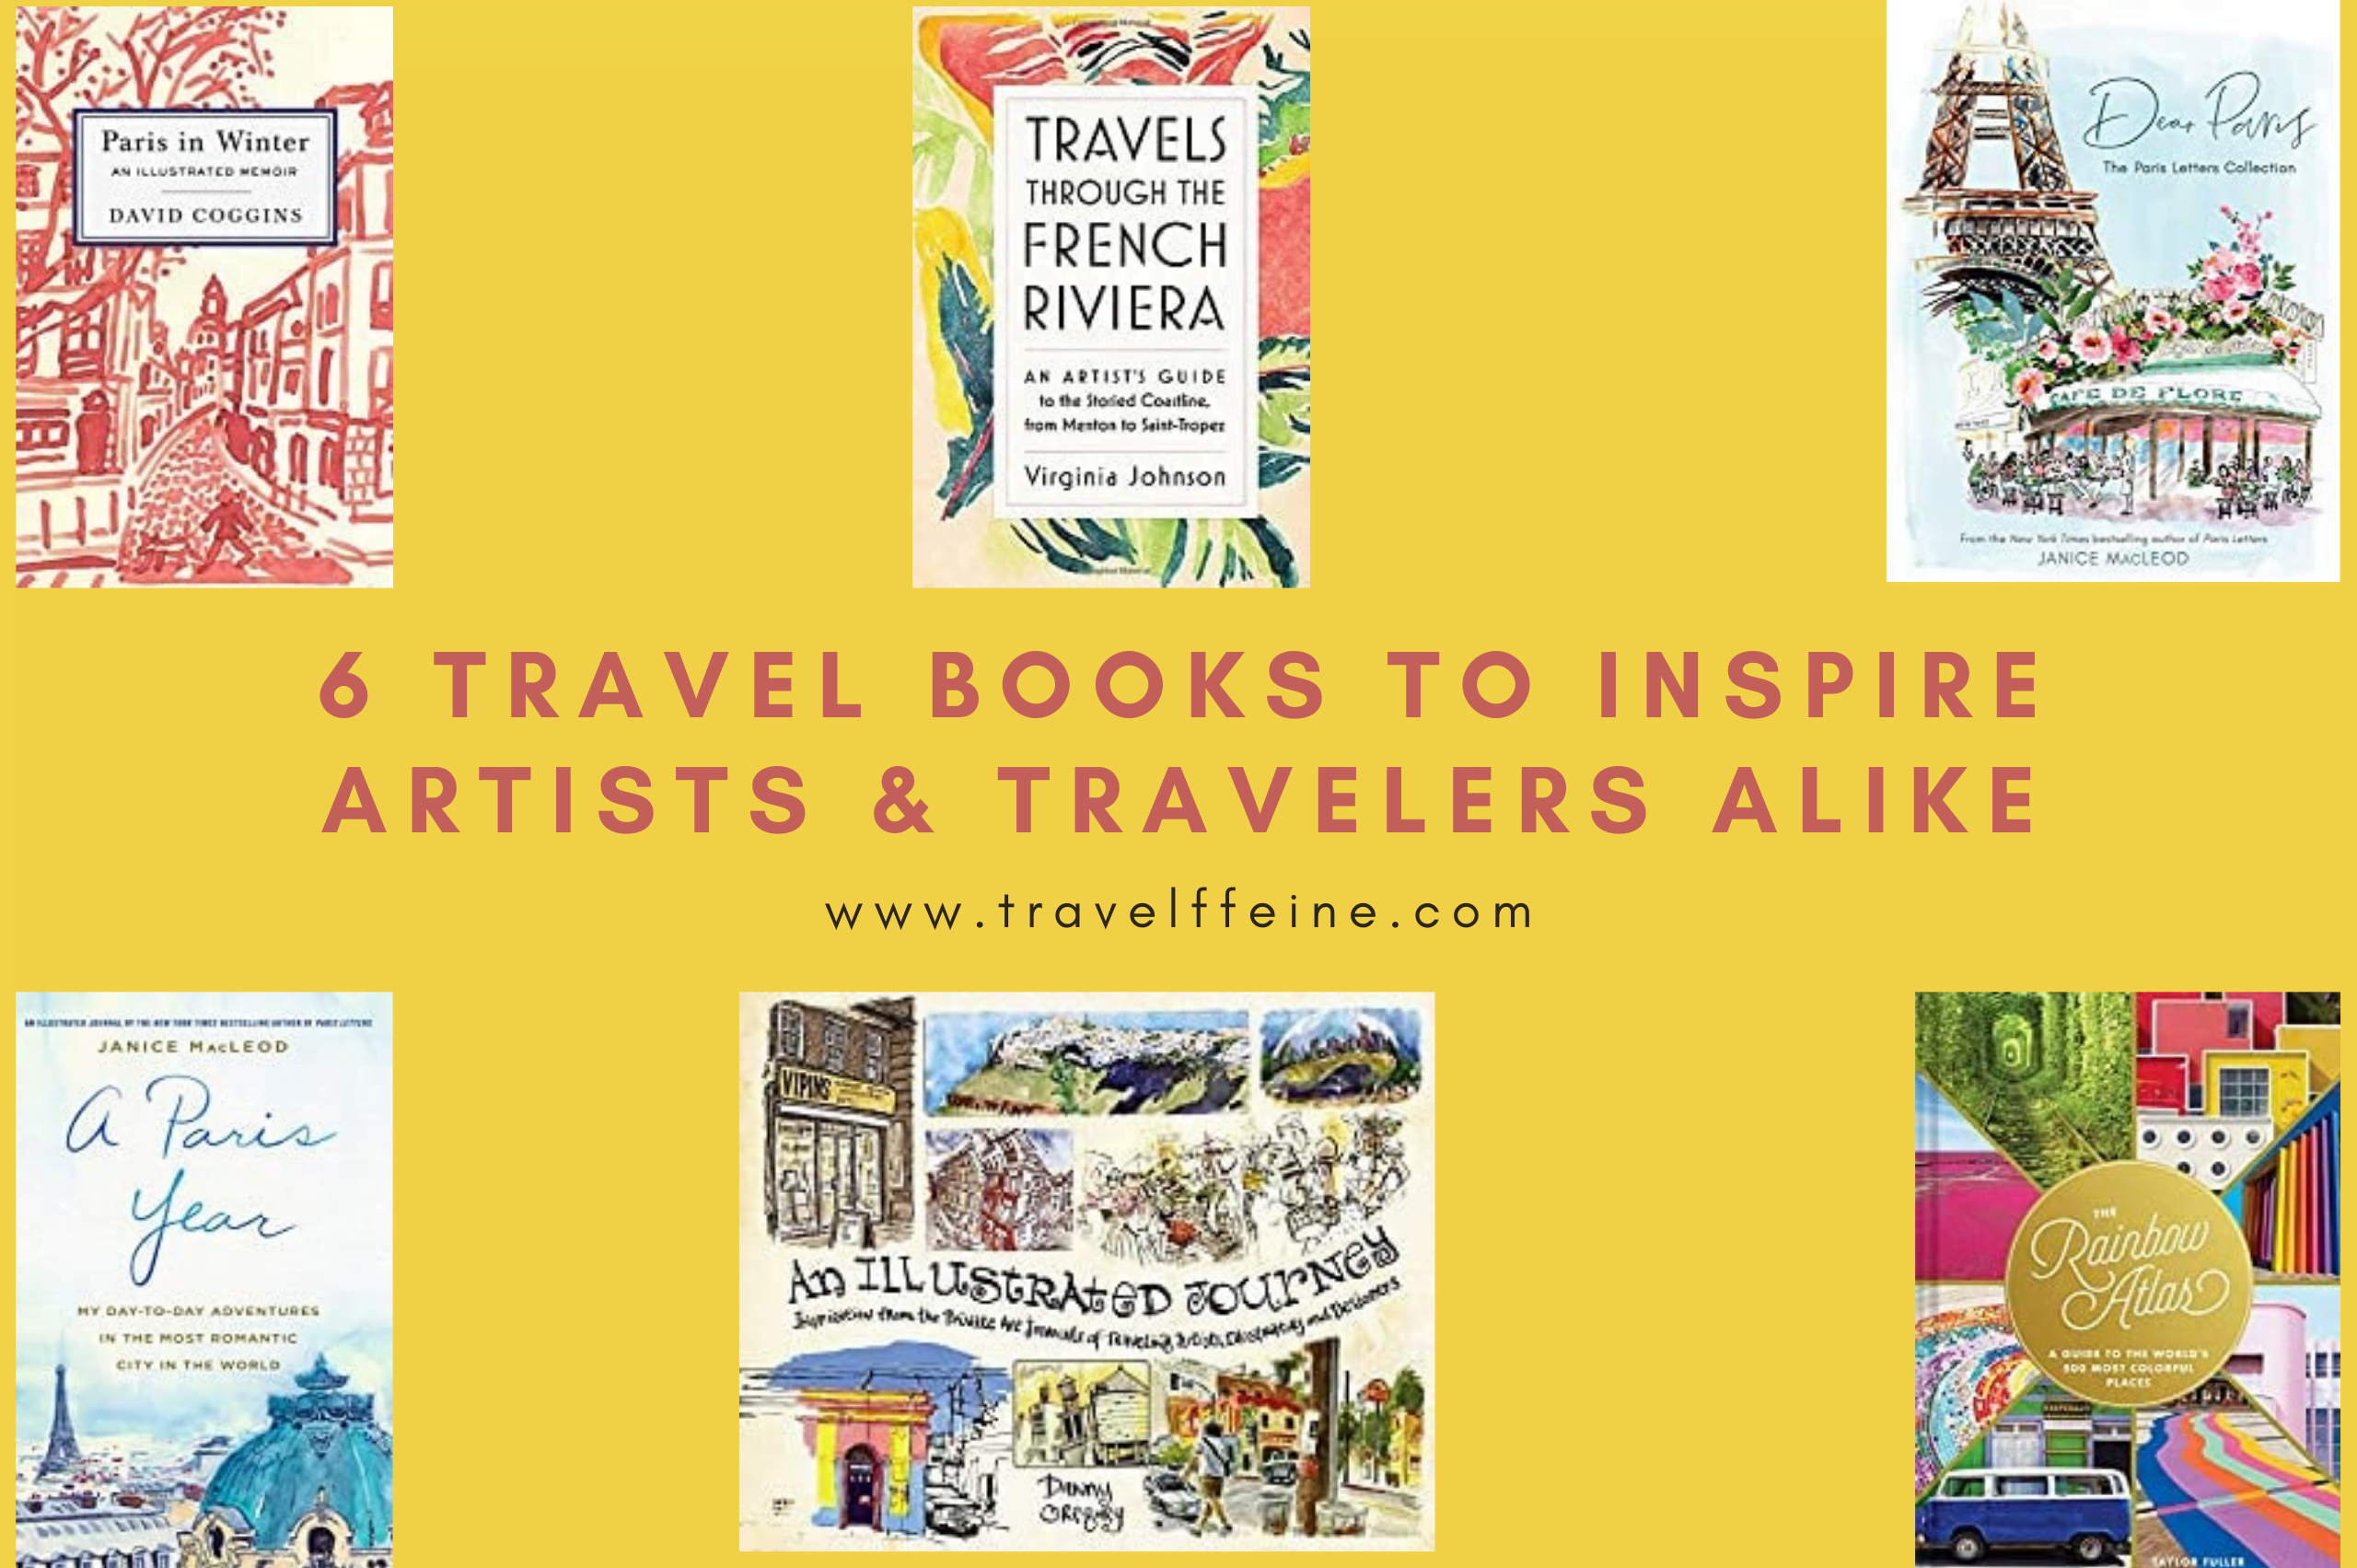 6 Travel Books to Inspire Artists & Travelers Alike - Travelffeine